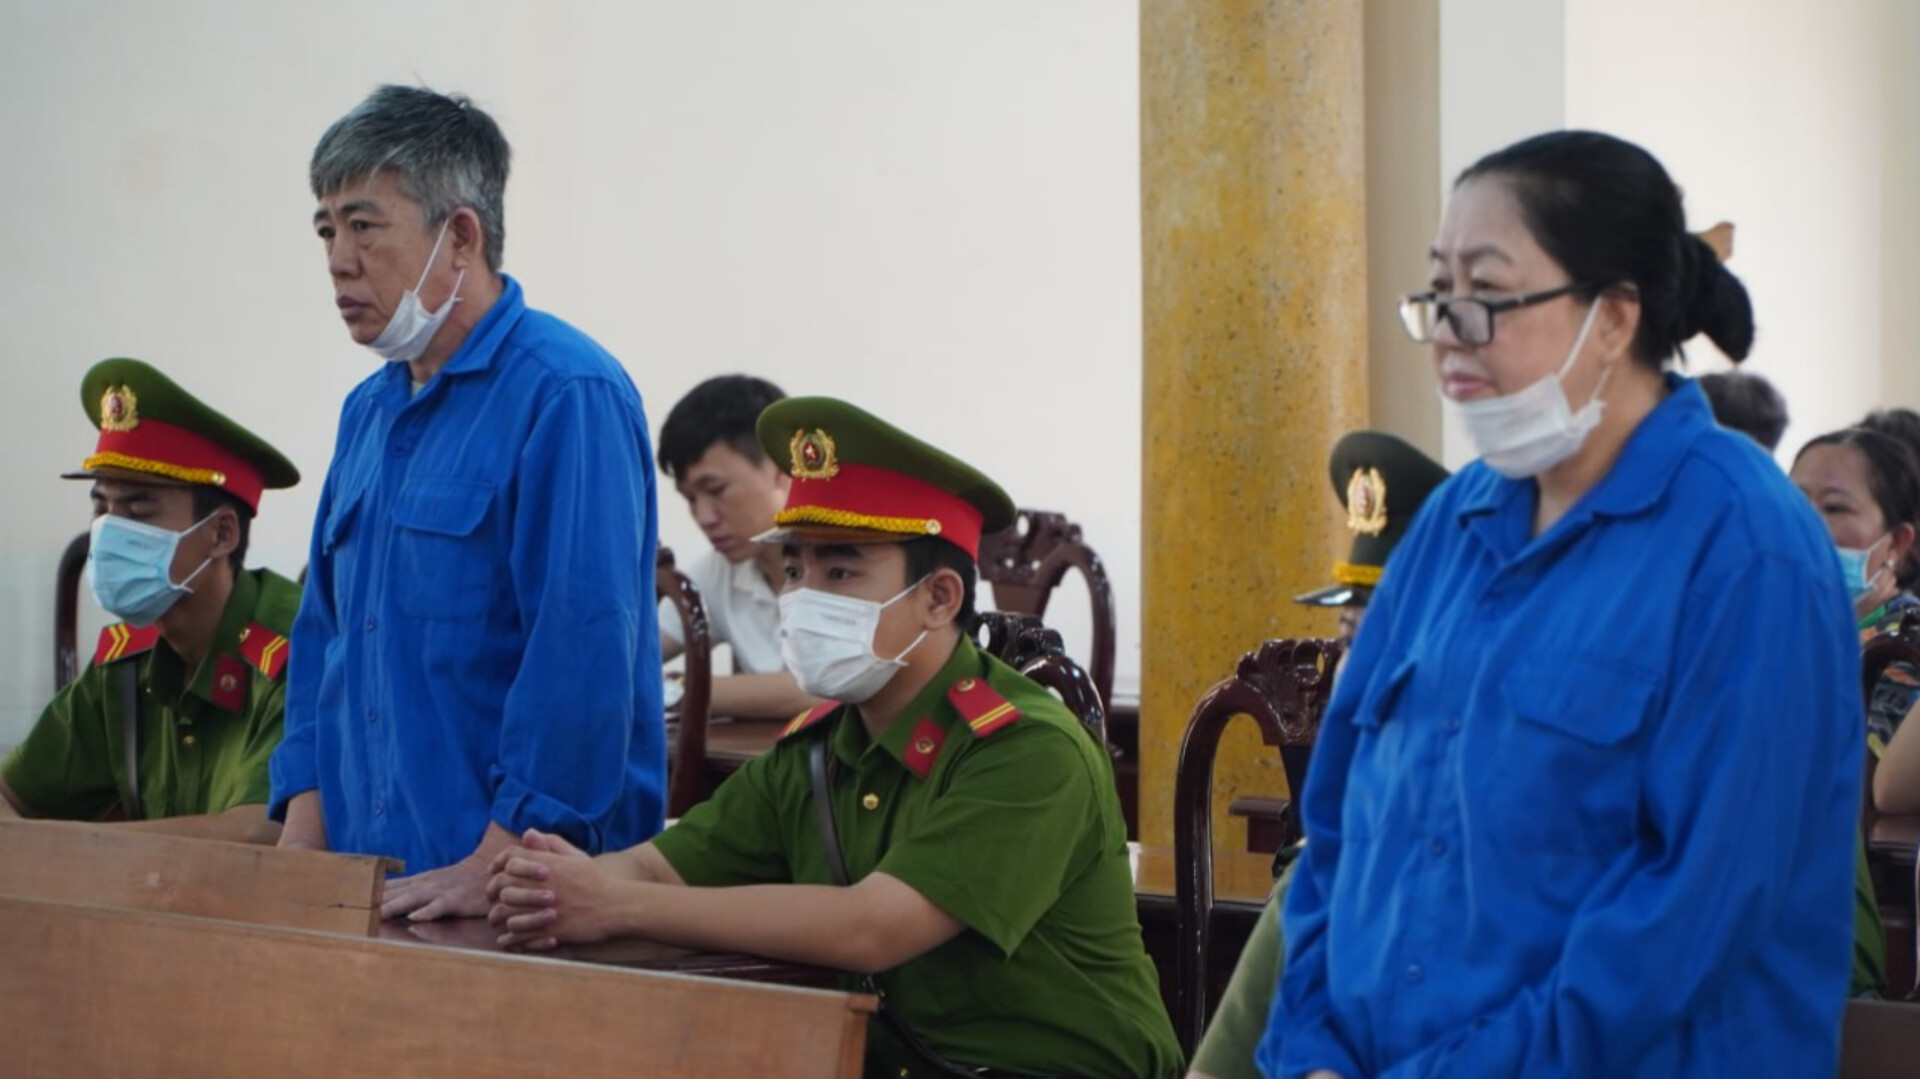 Tám năm tù cho cựu cảnh sát tiếp tay buôn lậu ở An Giang - Ảnh 1.